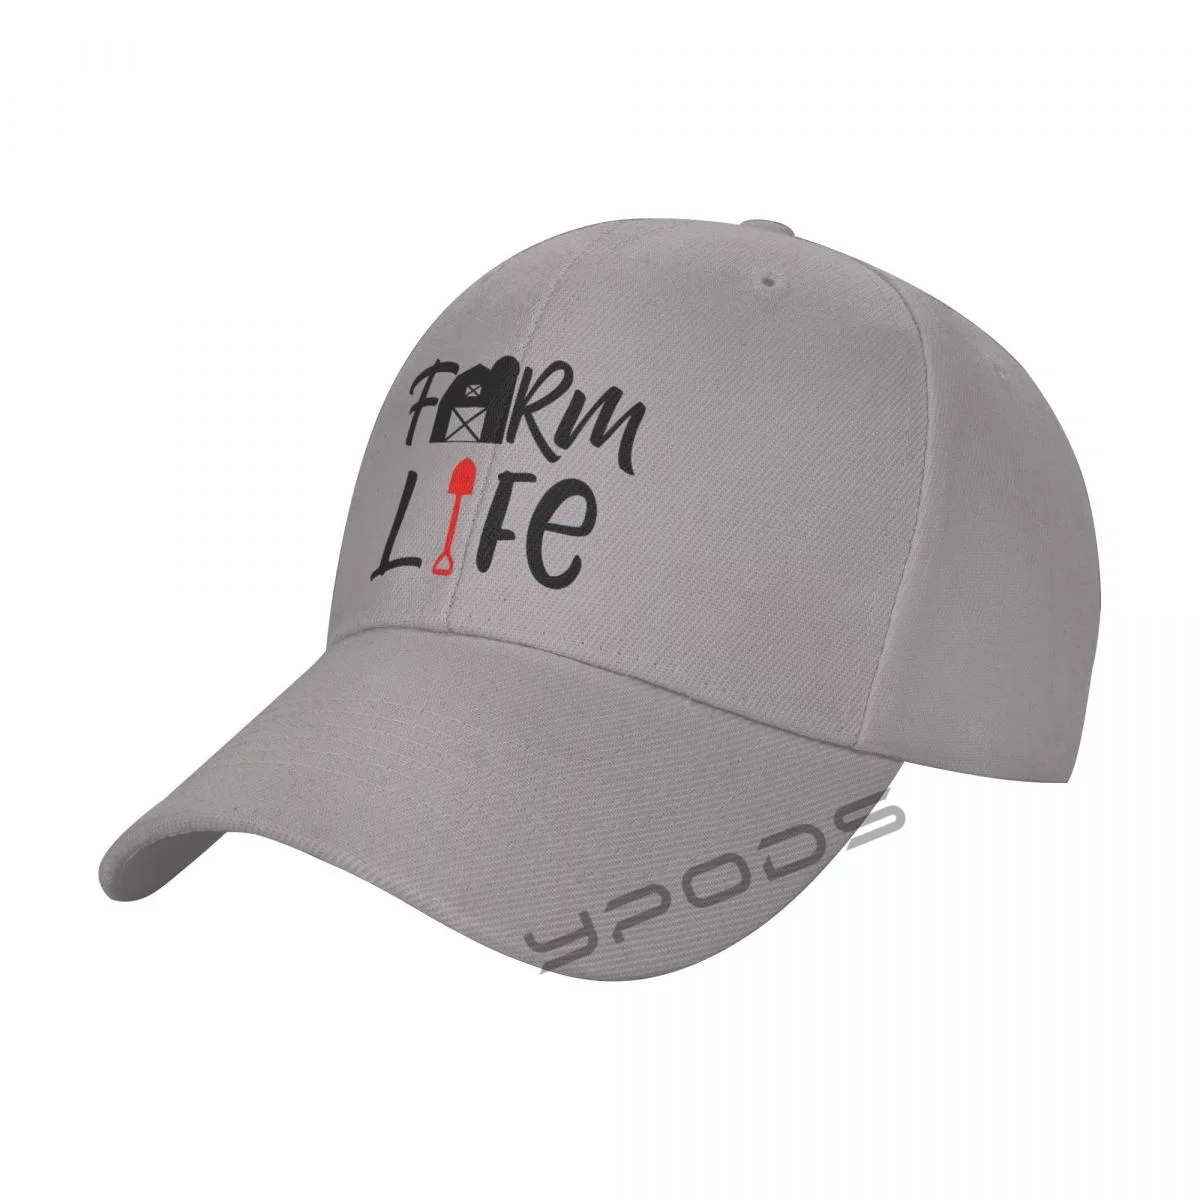 

Farm Life New Baseball Caps for Men Cap Women Hat Snapback Casual Cap Casquette hats